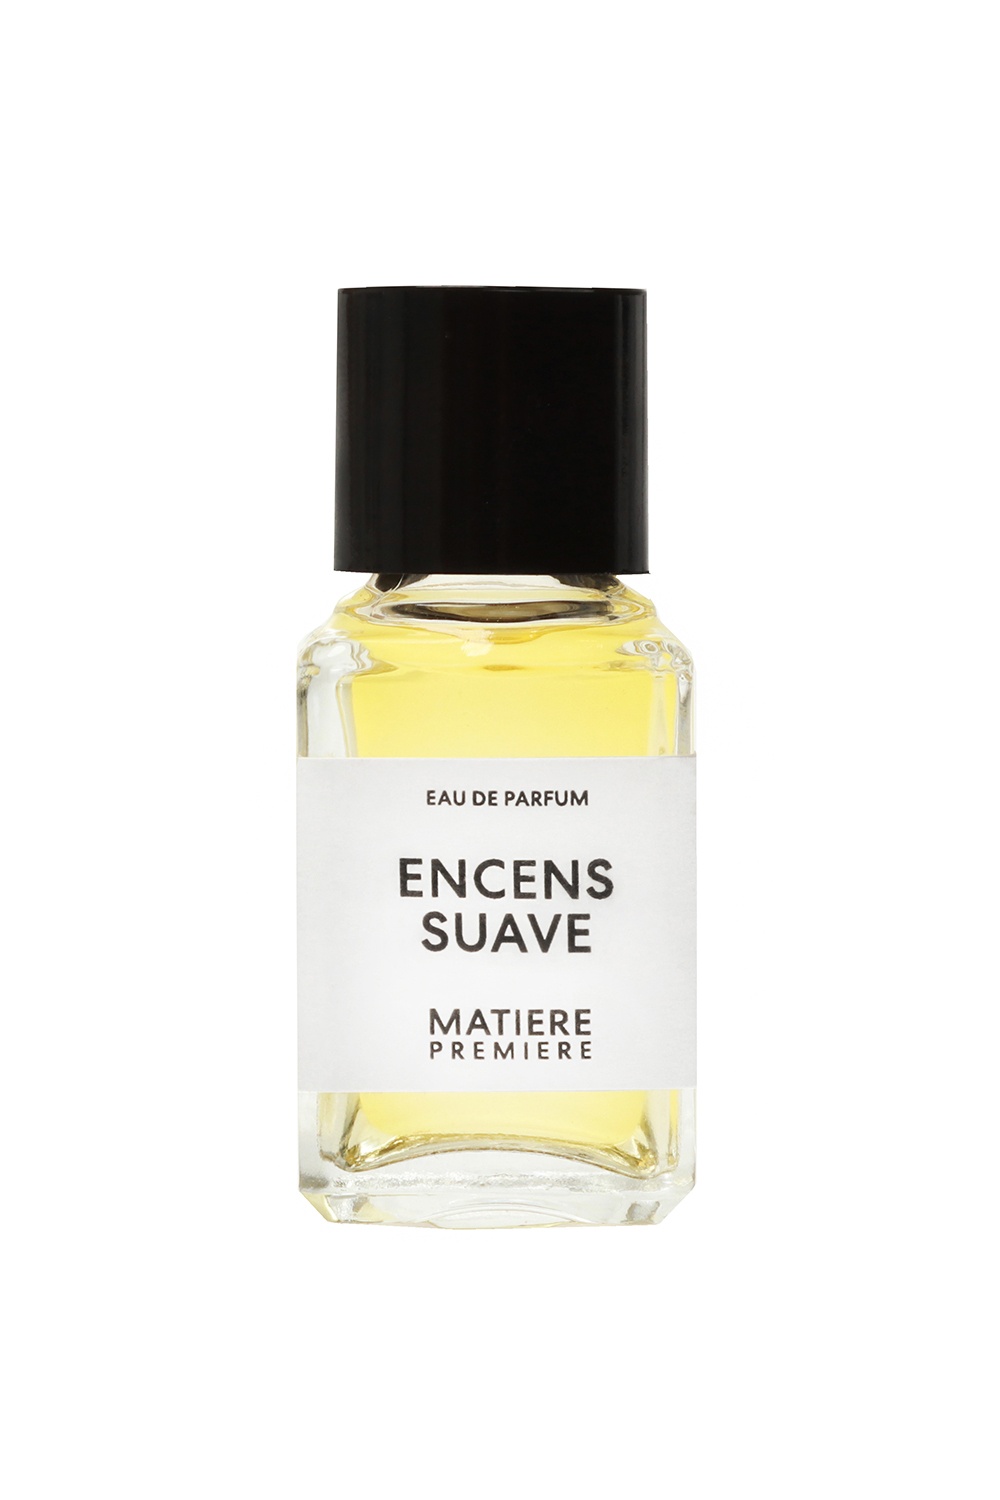 Matiere Premiere ‘Encens Suave’ eau de parfum